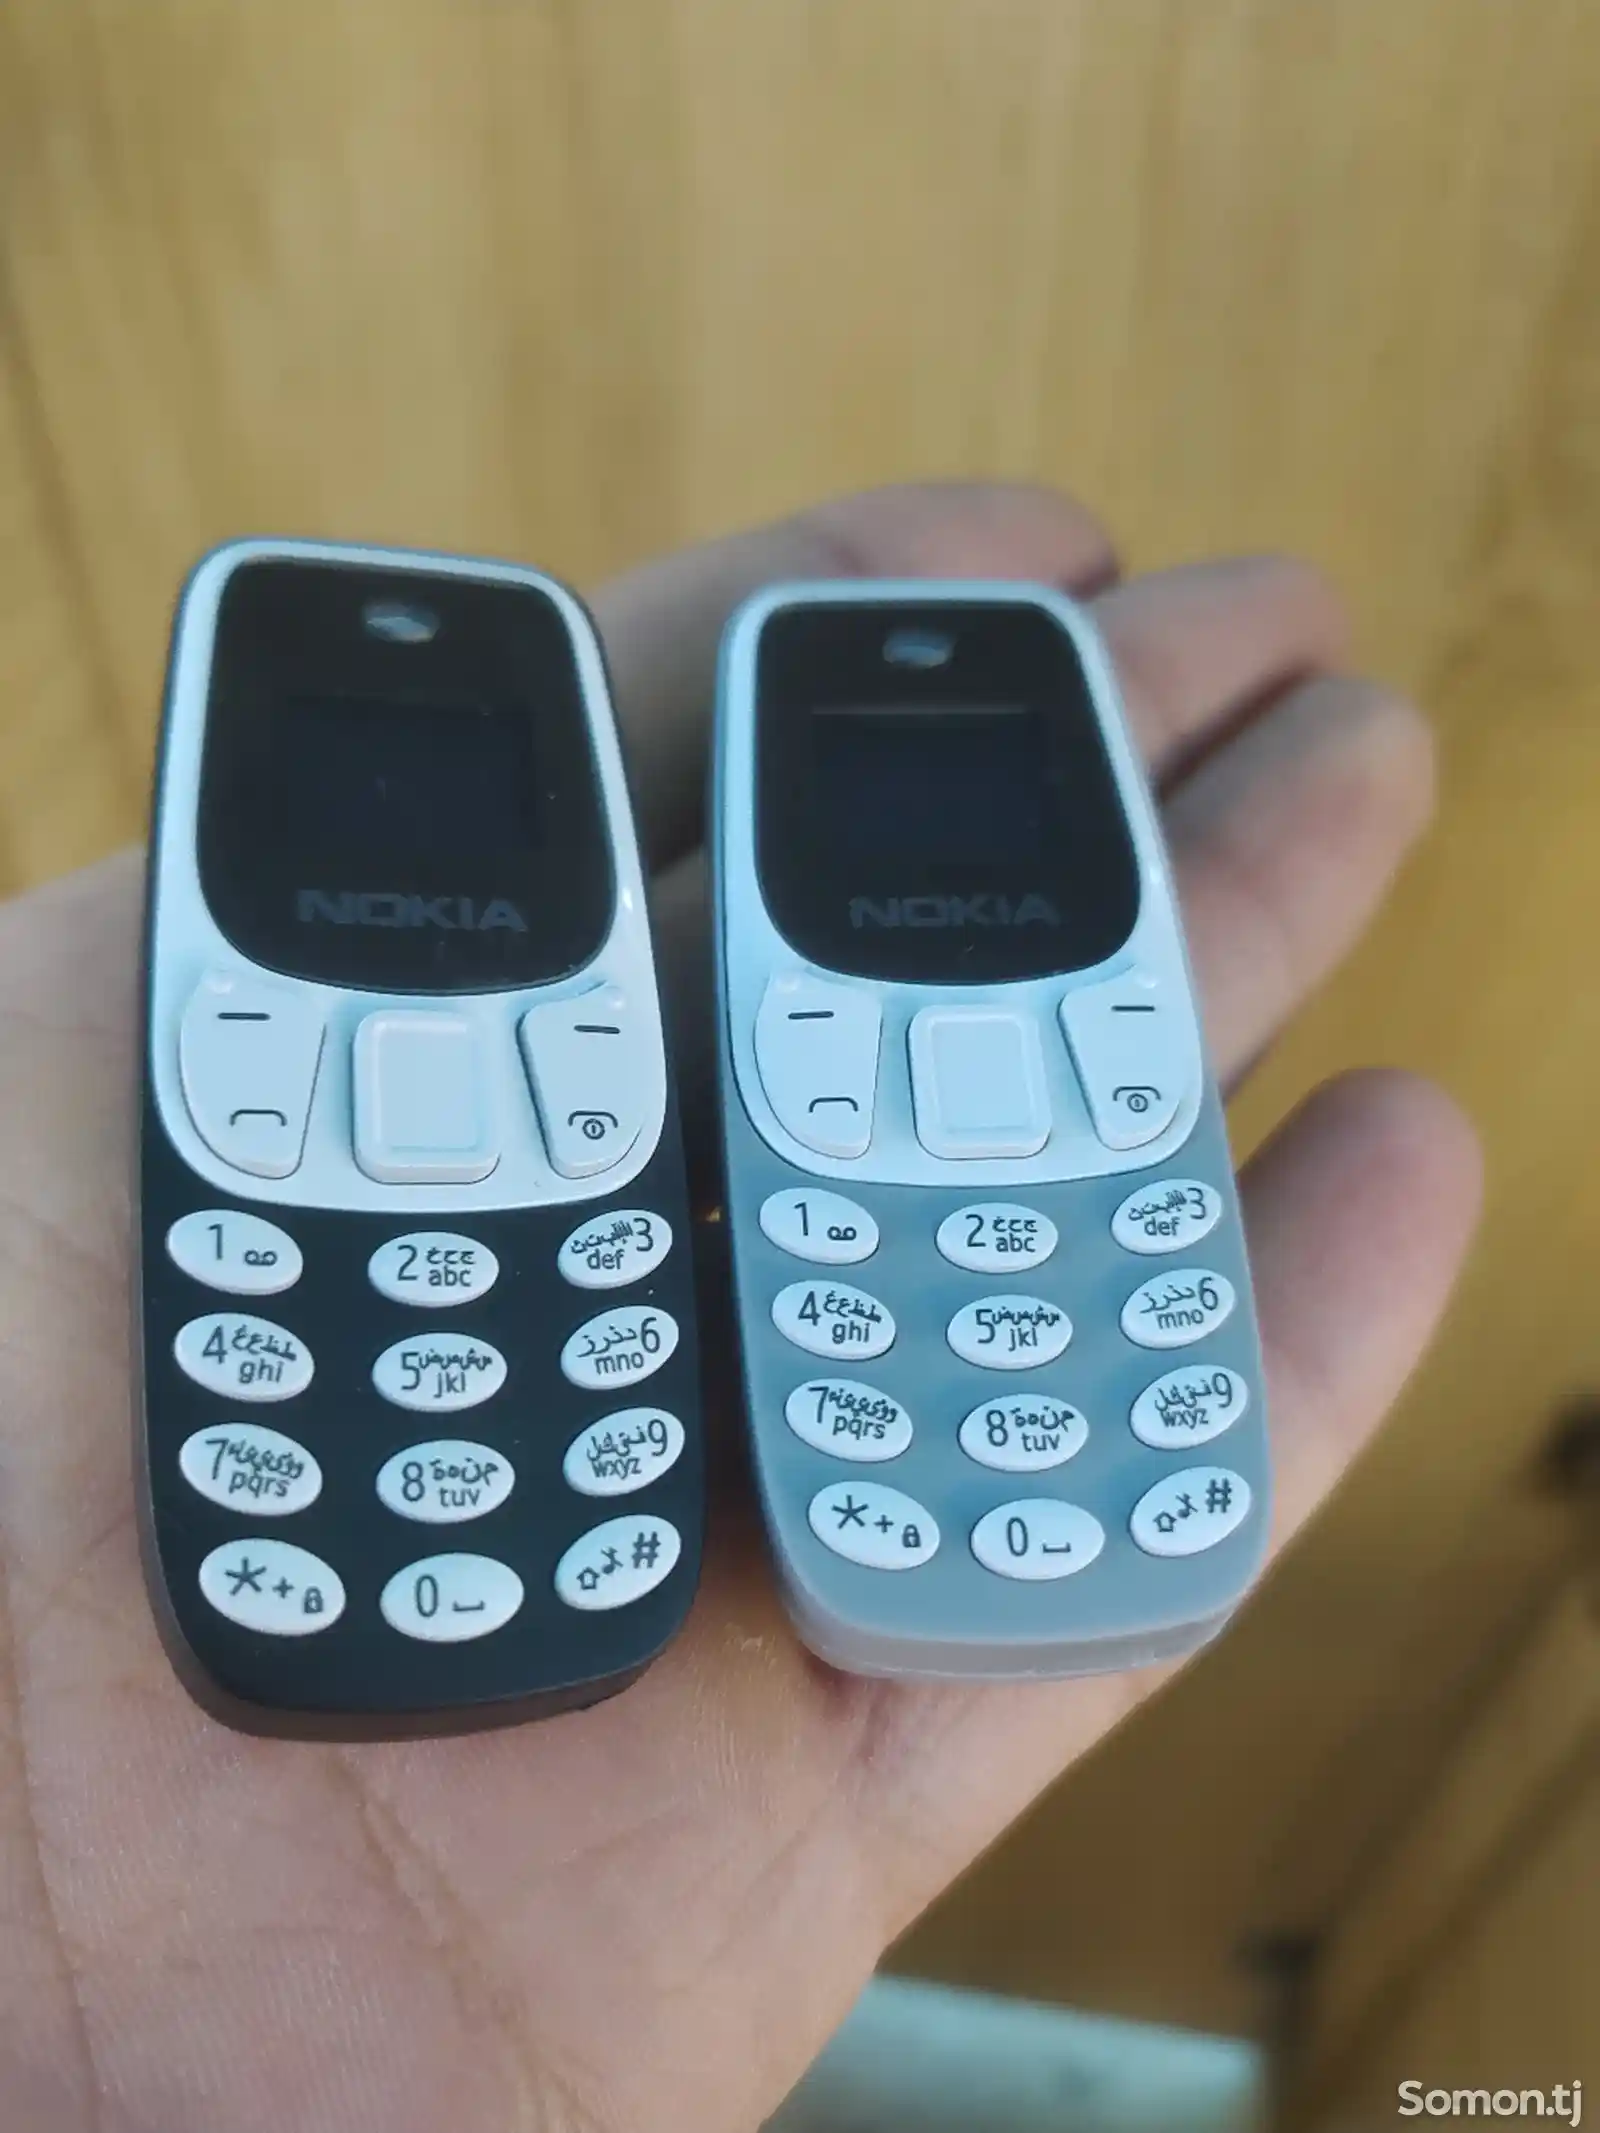 Nokia Mini M10-1